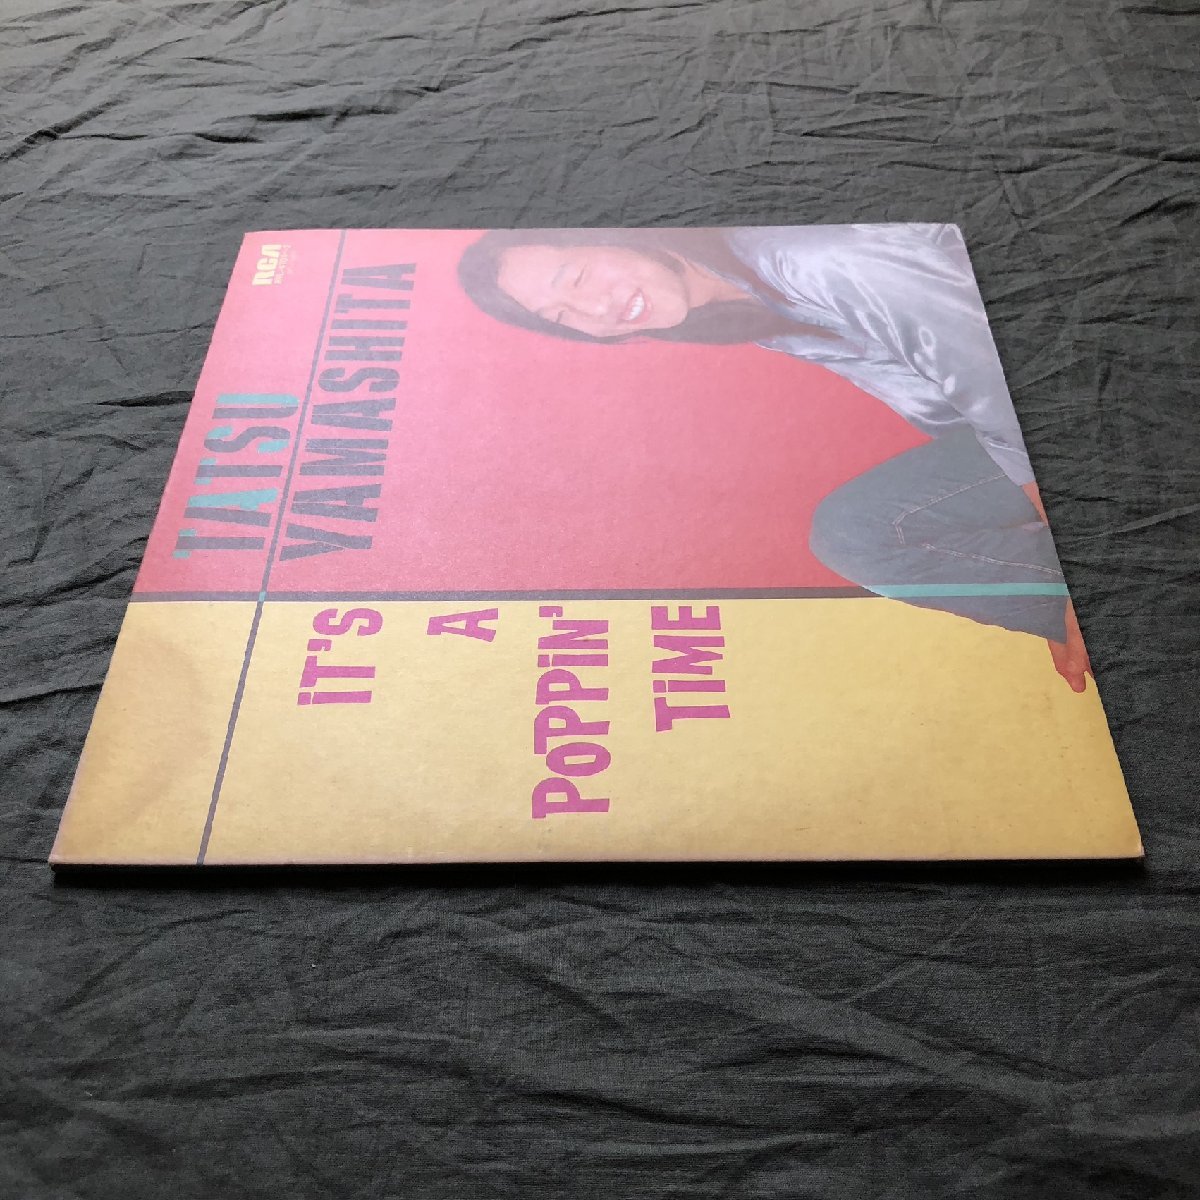 傷なし美盤 1978年 山下達郎 Tatsuro Yamashita 2枚組LPレコード イッツ・ア・ポッピン・タイム It's A Poppin' Time 名盤 坂本龍一_画像3